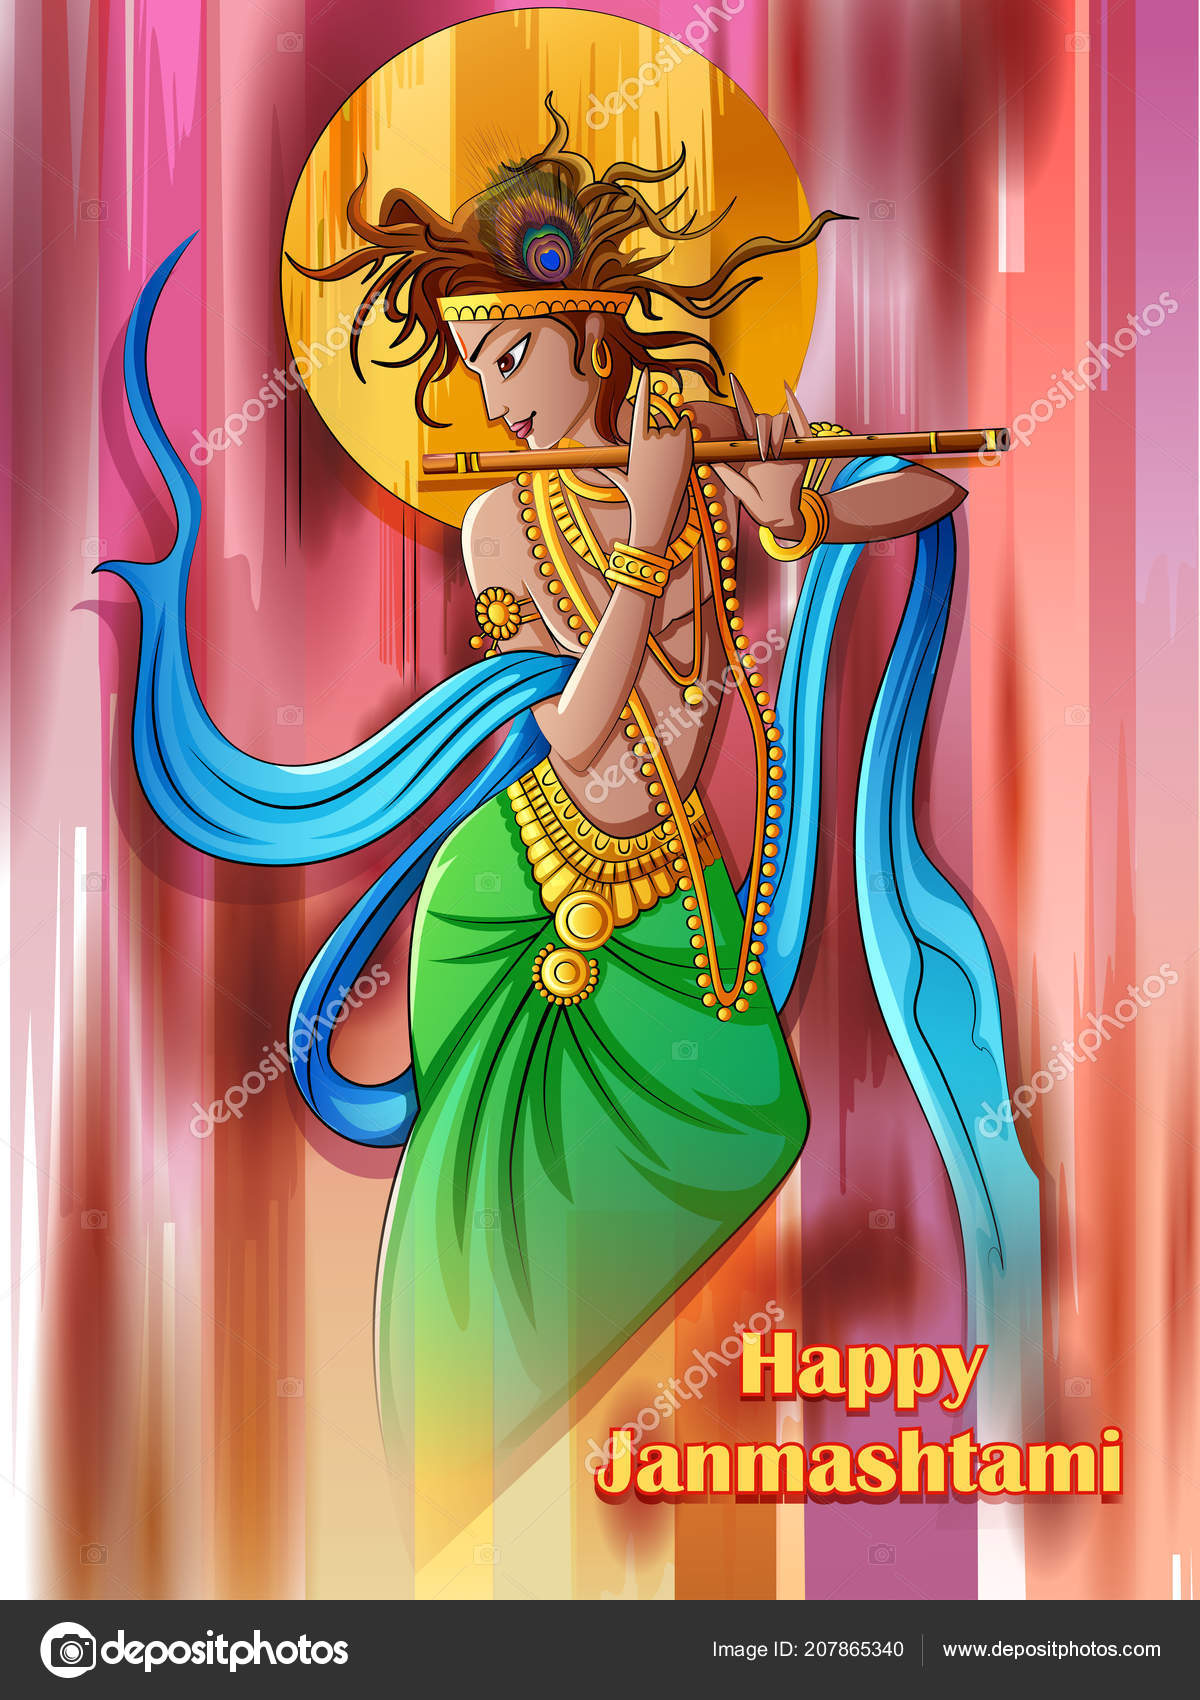 Lord Krishna spiller bansuri fløyte på Happy Janmashtami høytidsbakgrunn –  stockvektor ©PremiumStock 207865340